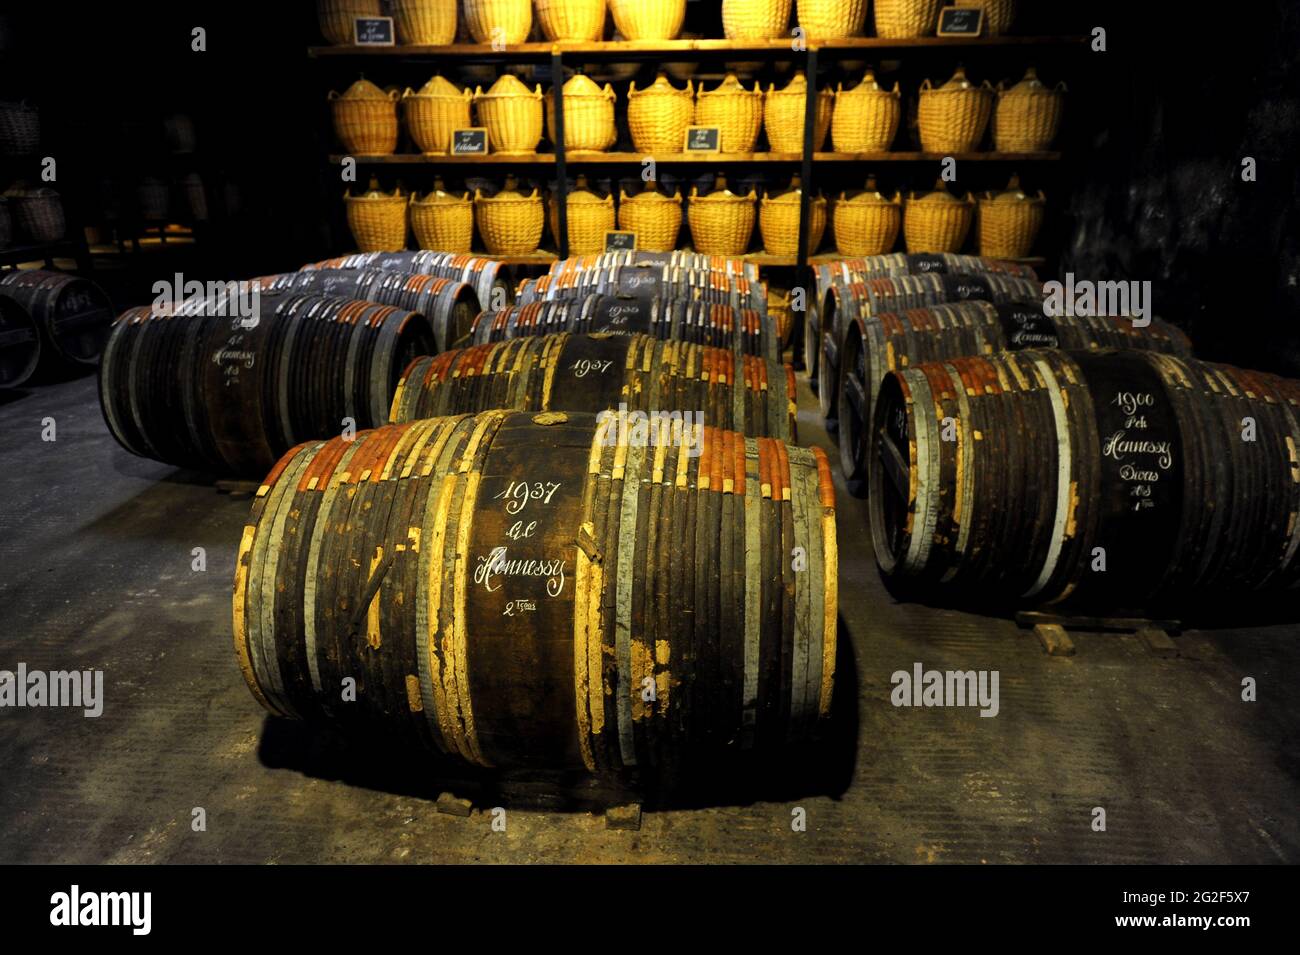 Barrels of Hennessy Cognac, Cognac, Poitou-Charentes, France Stock Photo